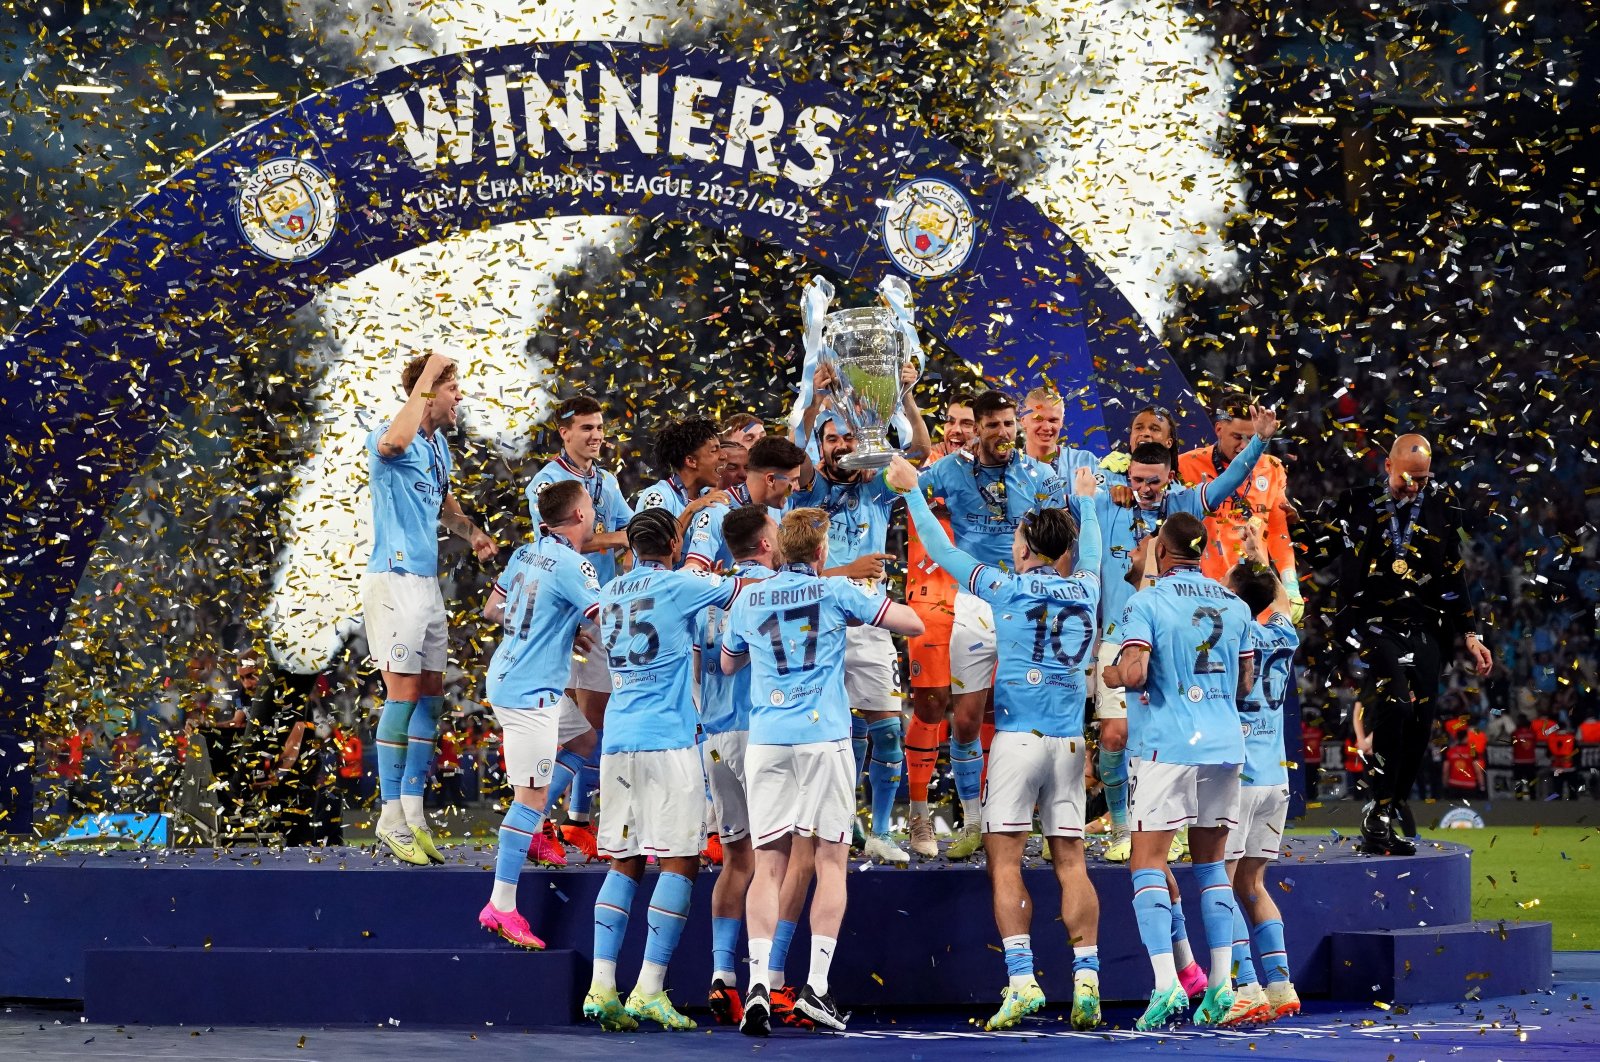 Pemenang treble Man City memerintah sebagai tim klub terbesar Inggris